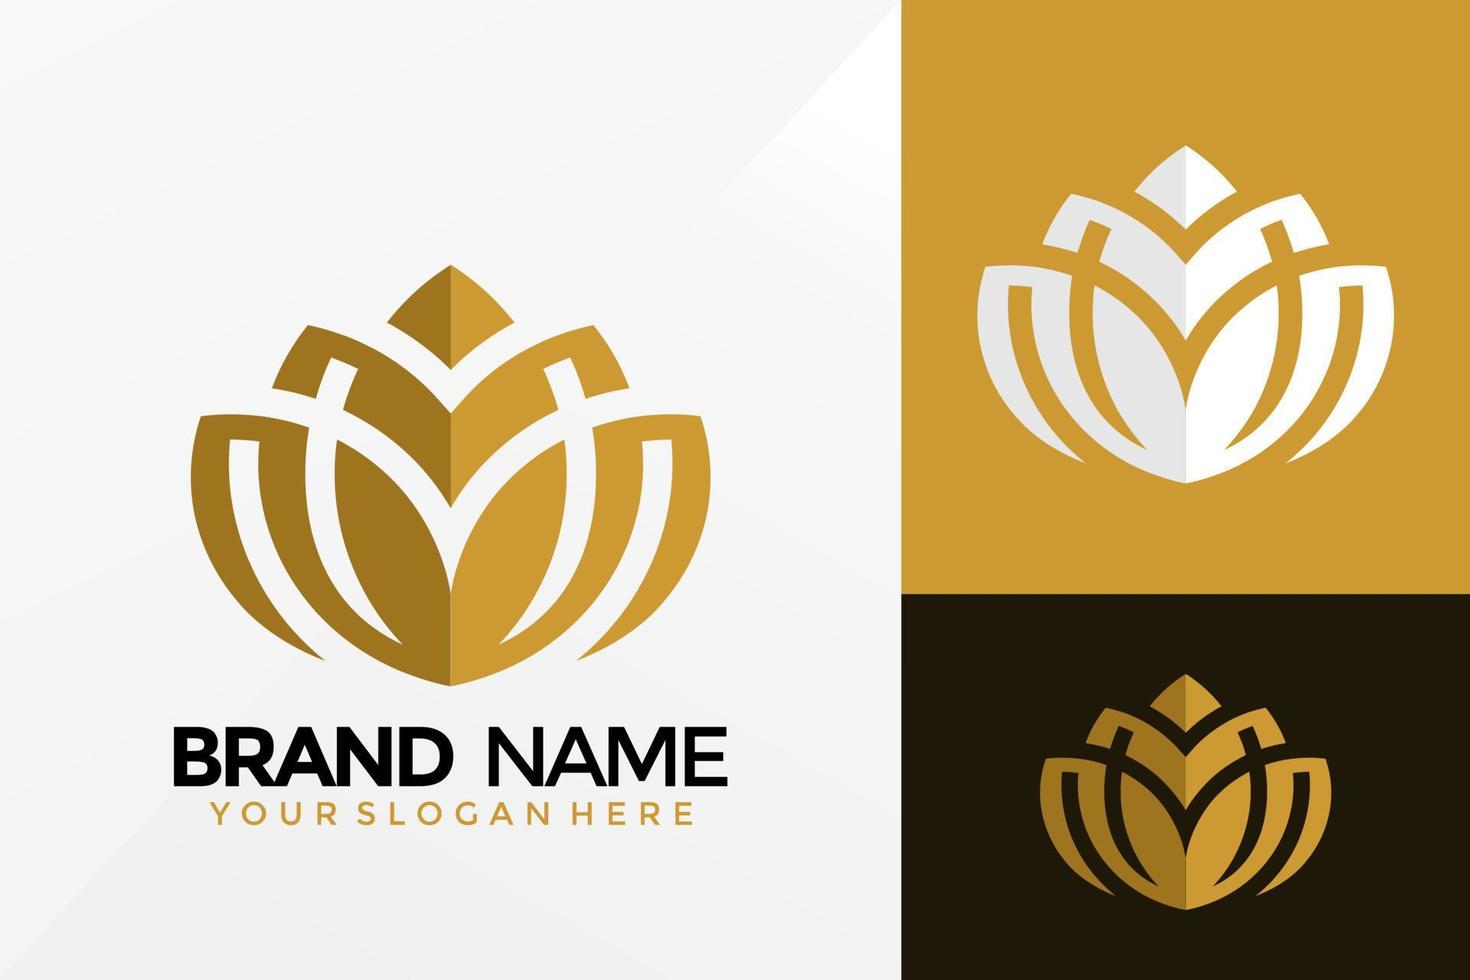 diseño de vector de logotipo de flor de loto dorado. emblema de identidad de marca, concepto de diseños, logotipos, elemento de logotipo para plantilla.